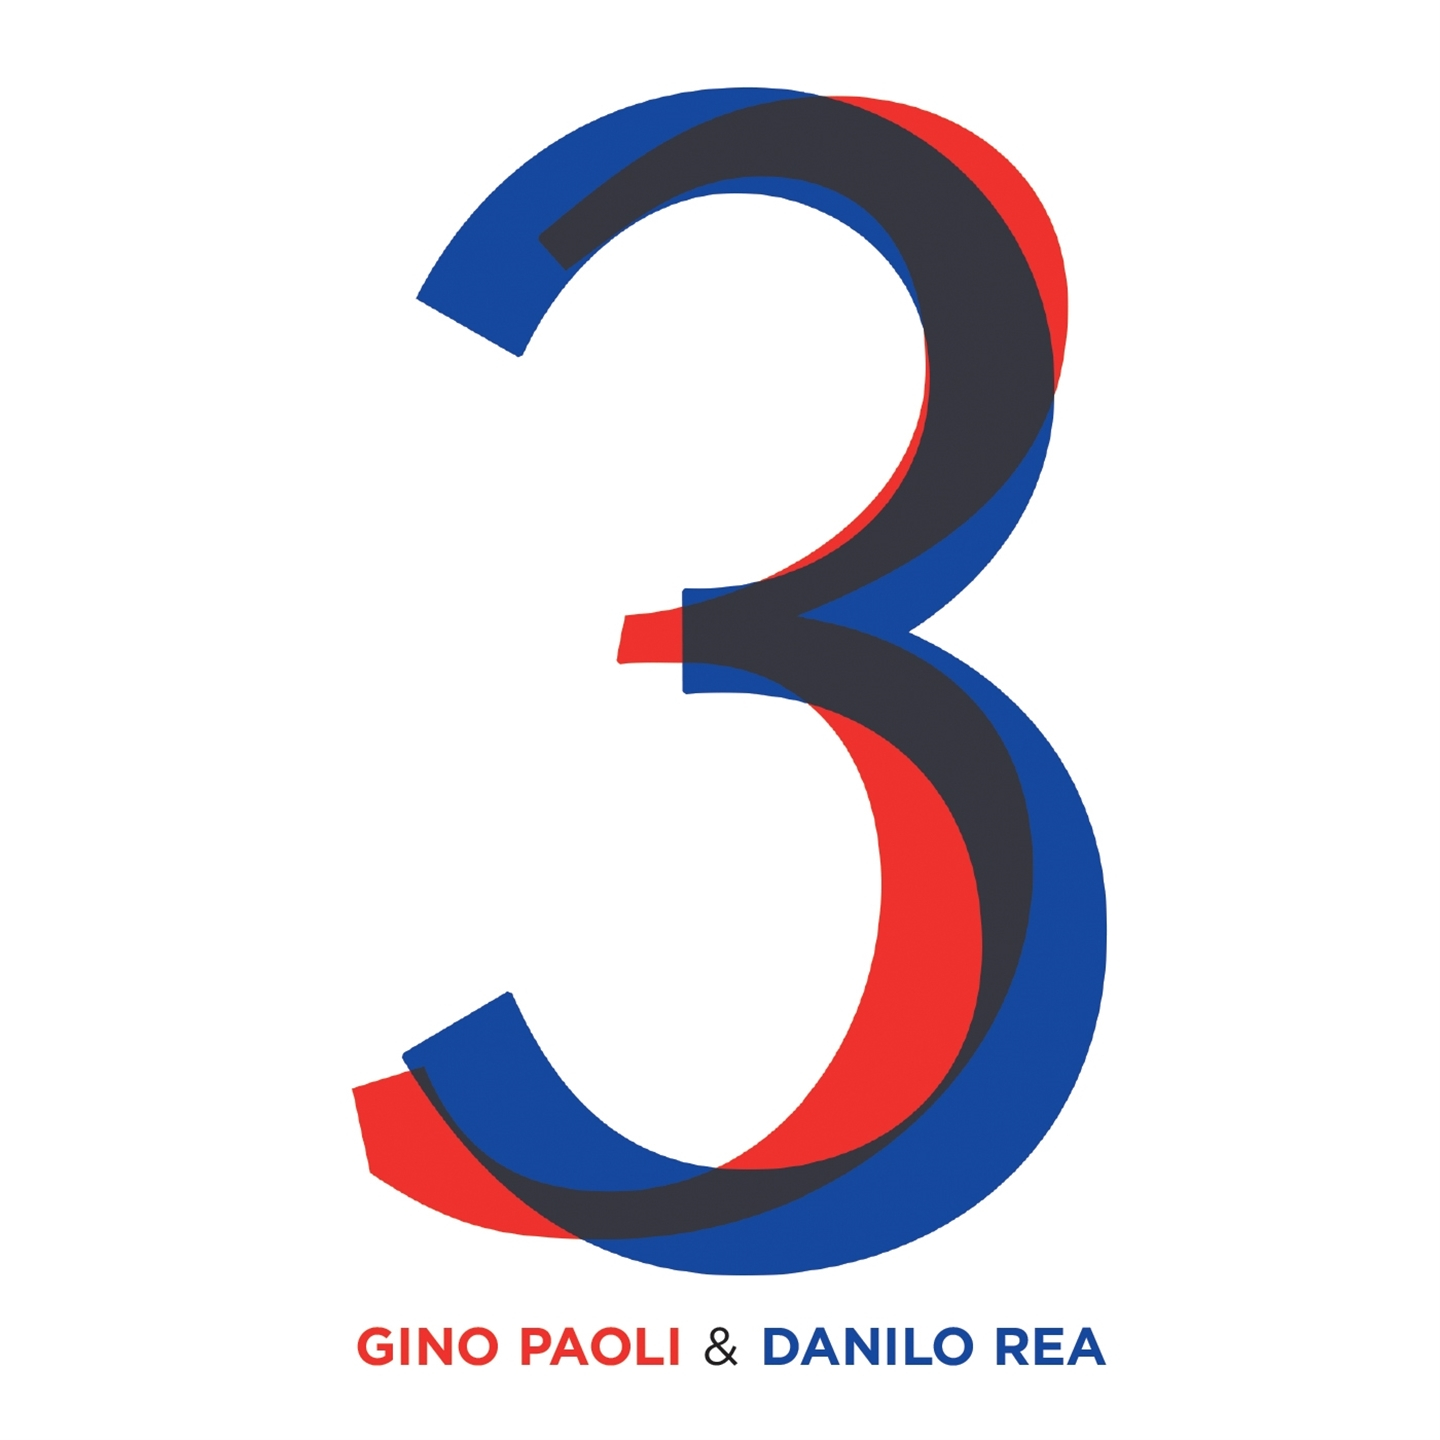 Gino Paoli, Danilo Rea - 3 - Photo 1/1